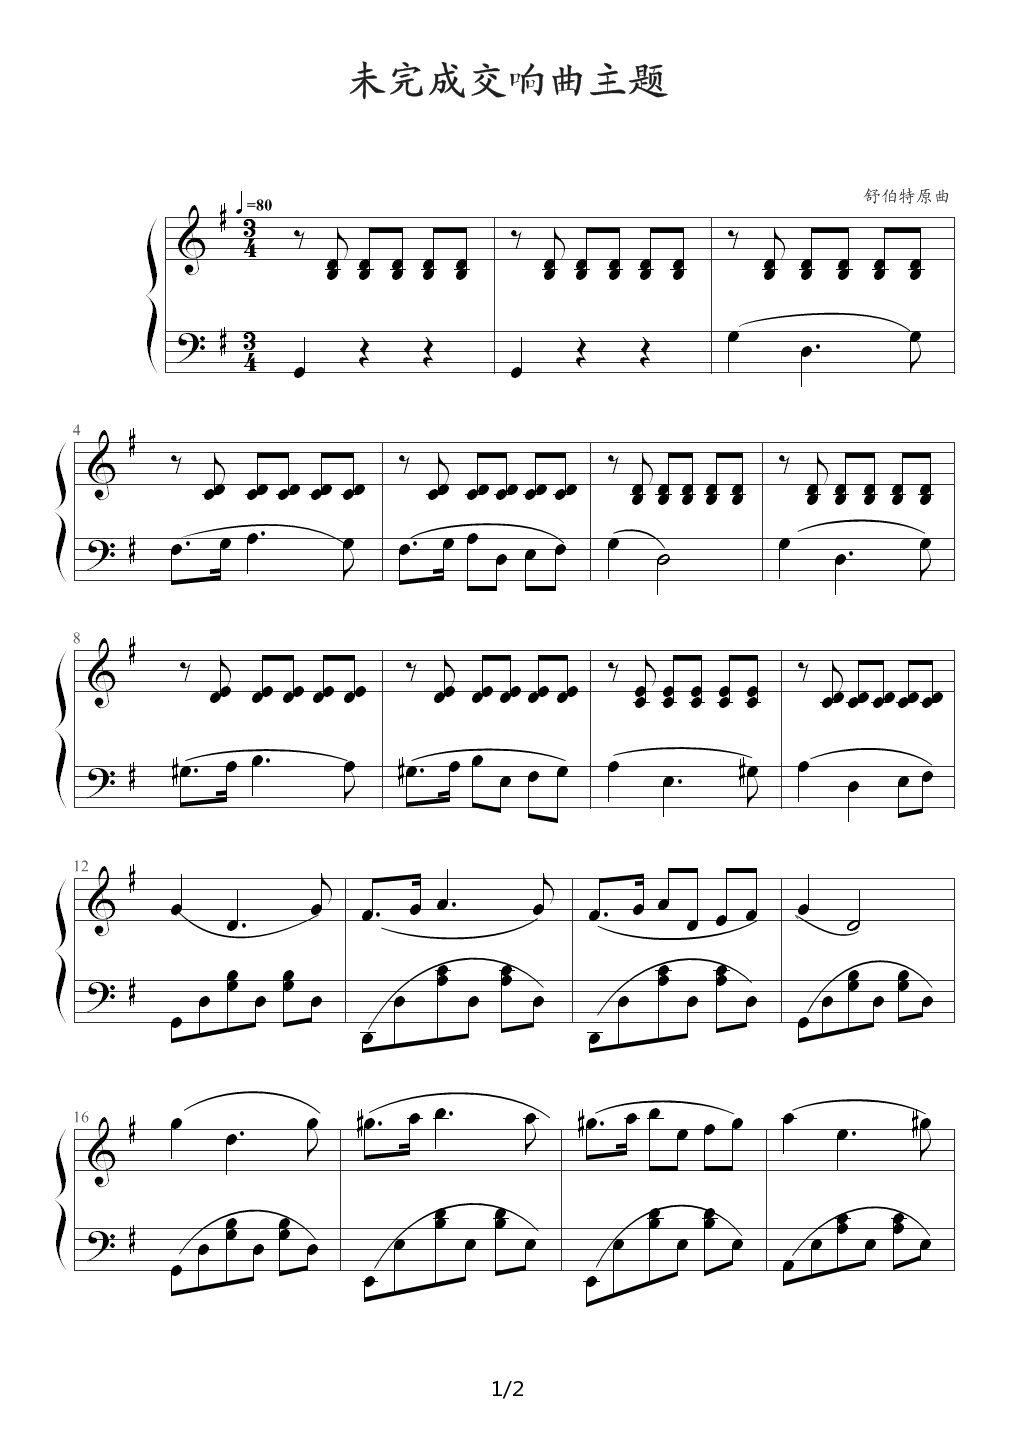 钢琴基础曲谱_钢琴基础训练曲谱